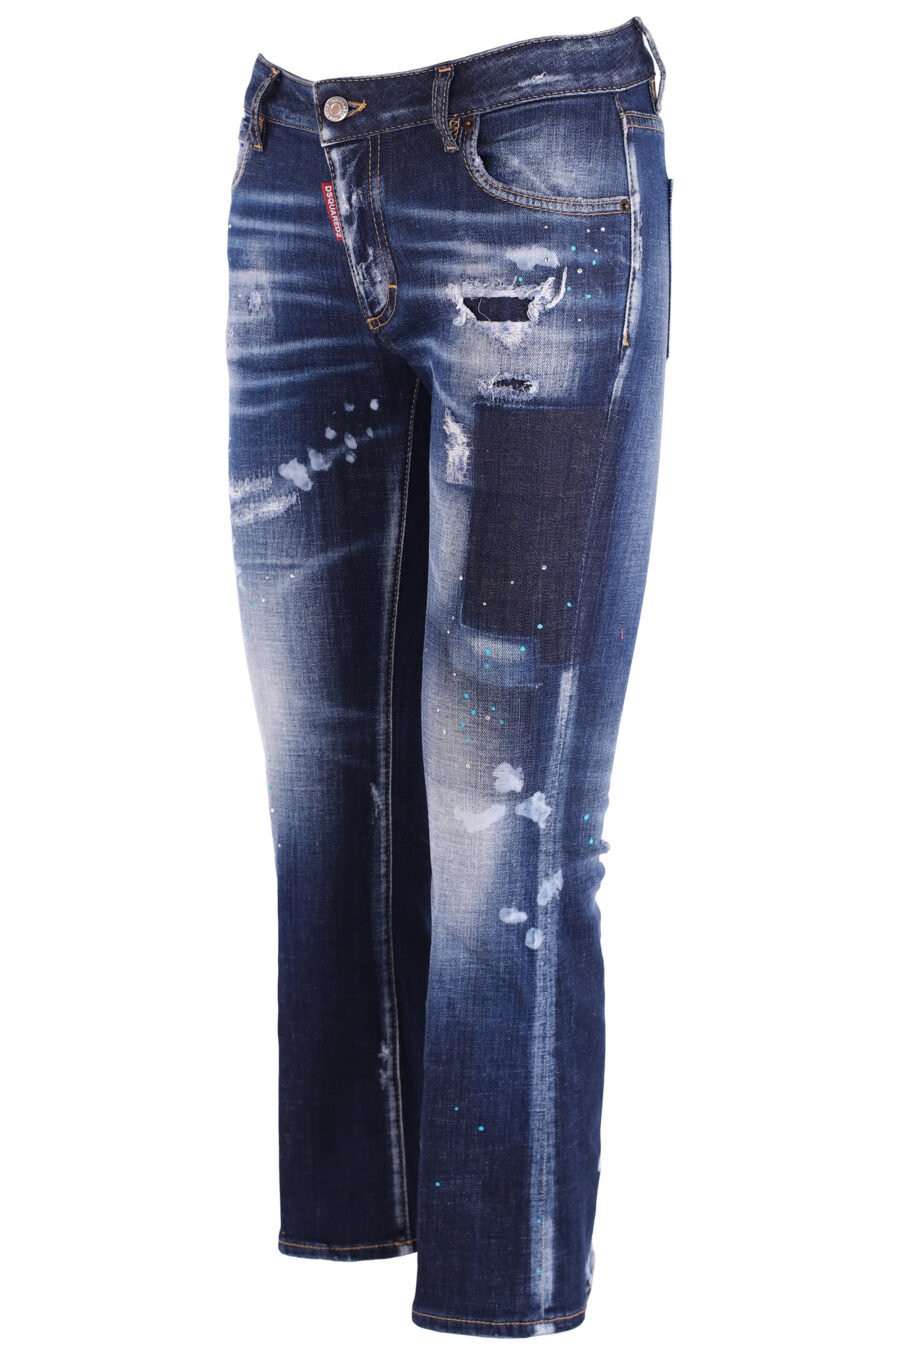 Pantalón vaquero "bell bottom jean" azul desgastado con parche - IMG 3740